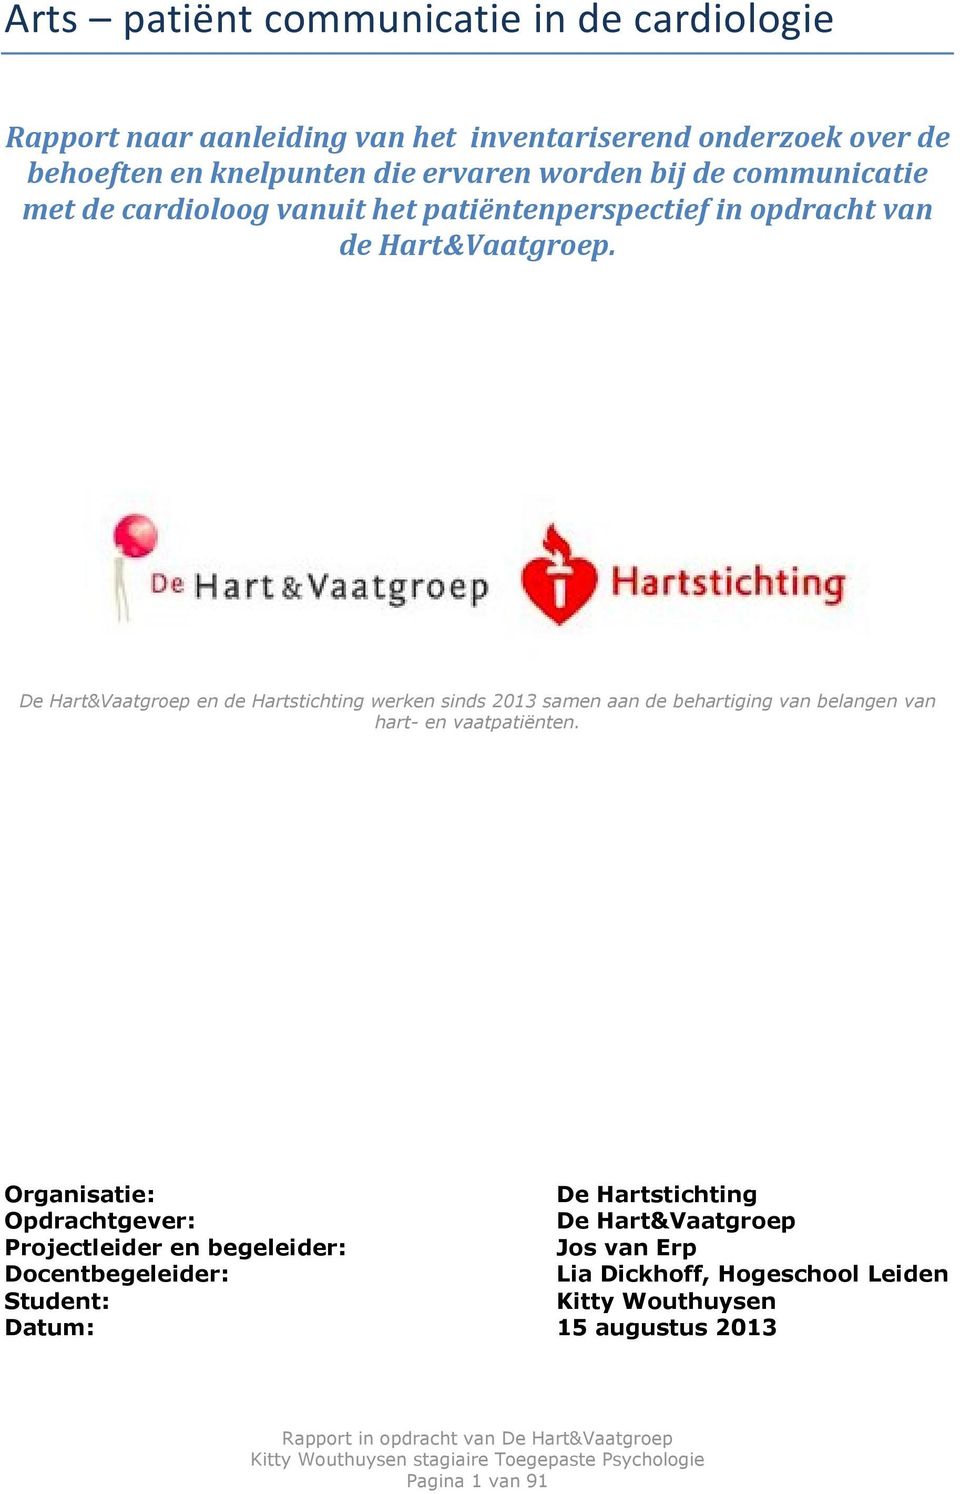 De Hart&Vaatgroep en de Hartstichting werken sinds 2013 samen aan de behartiging van belangen van hart- en vaatpatiënten.